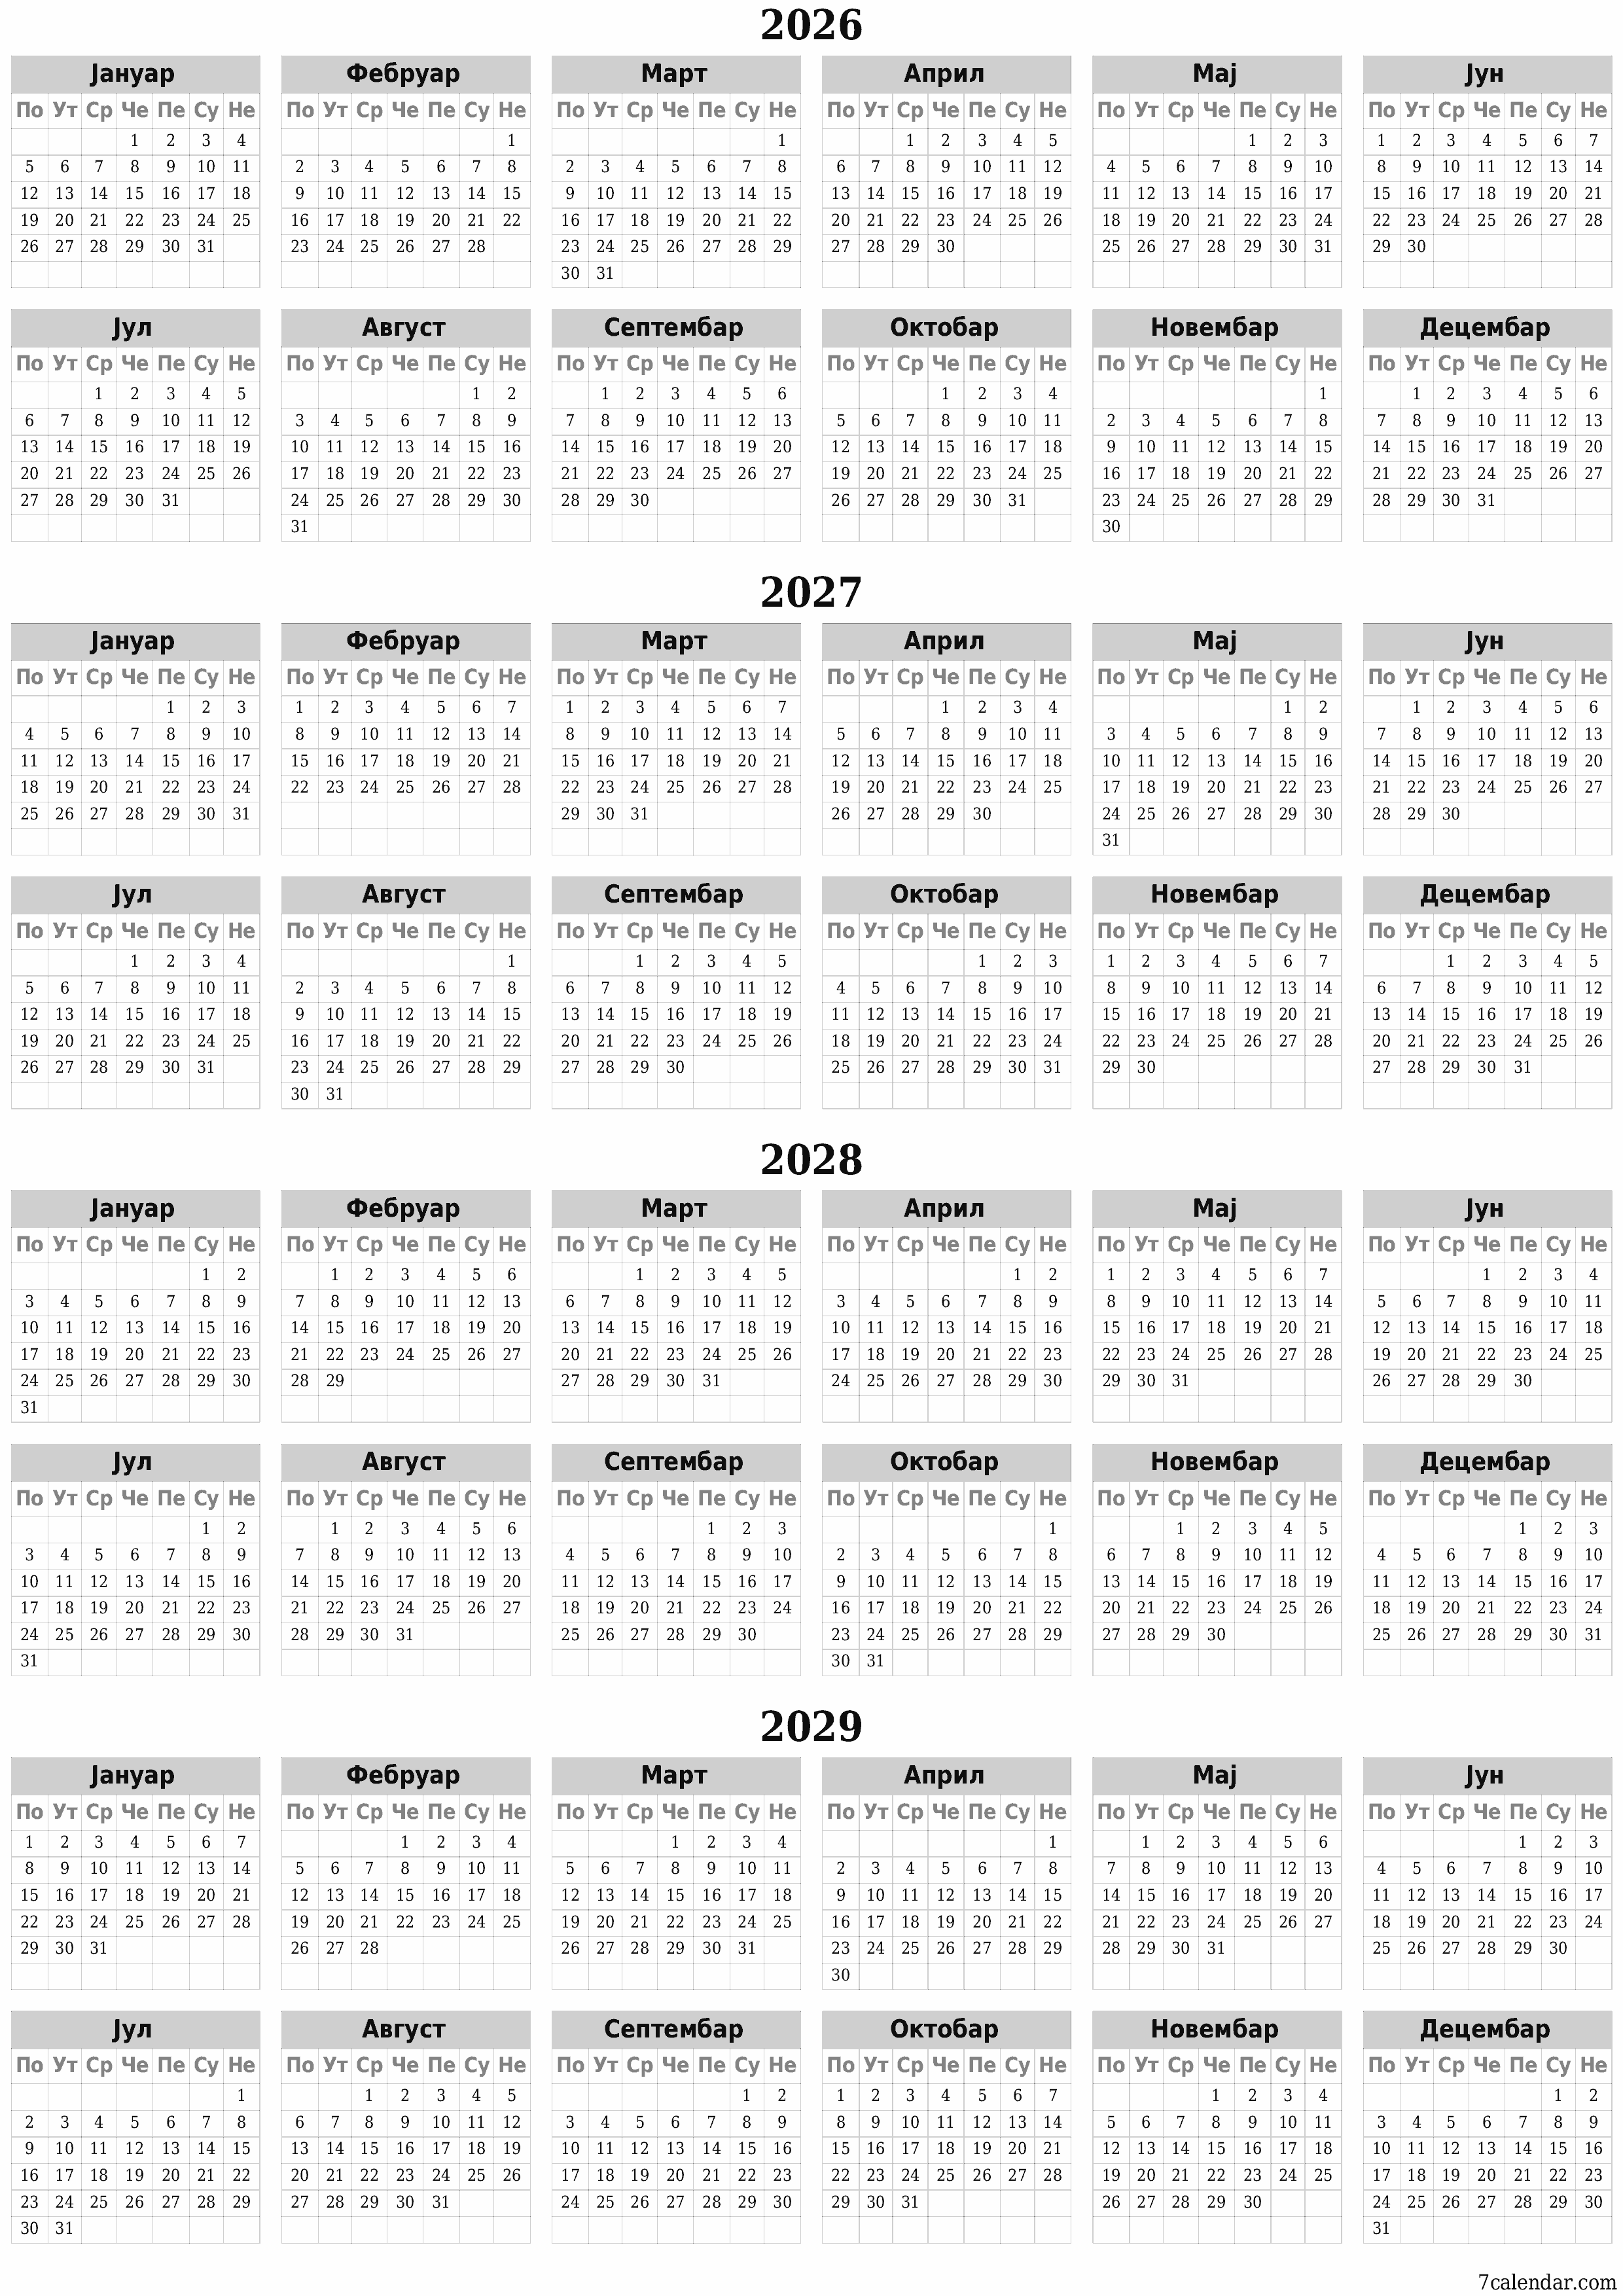  за штампање зидни шаблон а бесплатни вертикальниј Годишње календар Фебруар (Феб) 2026